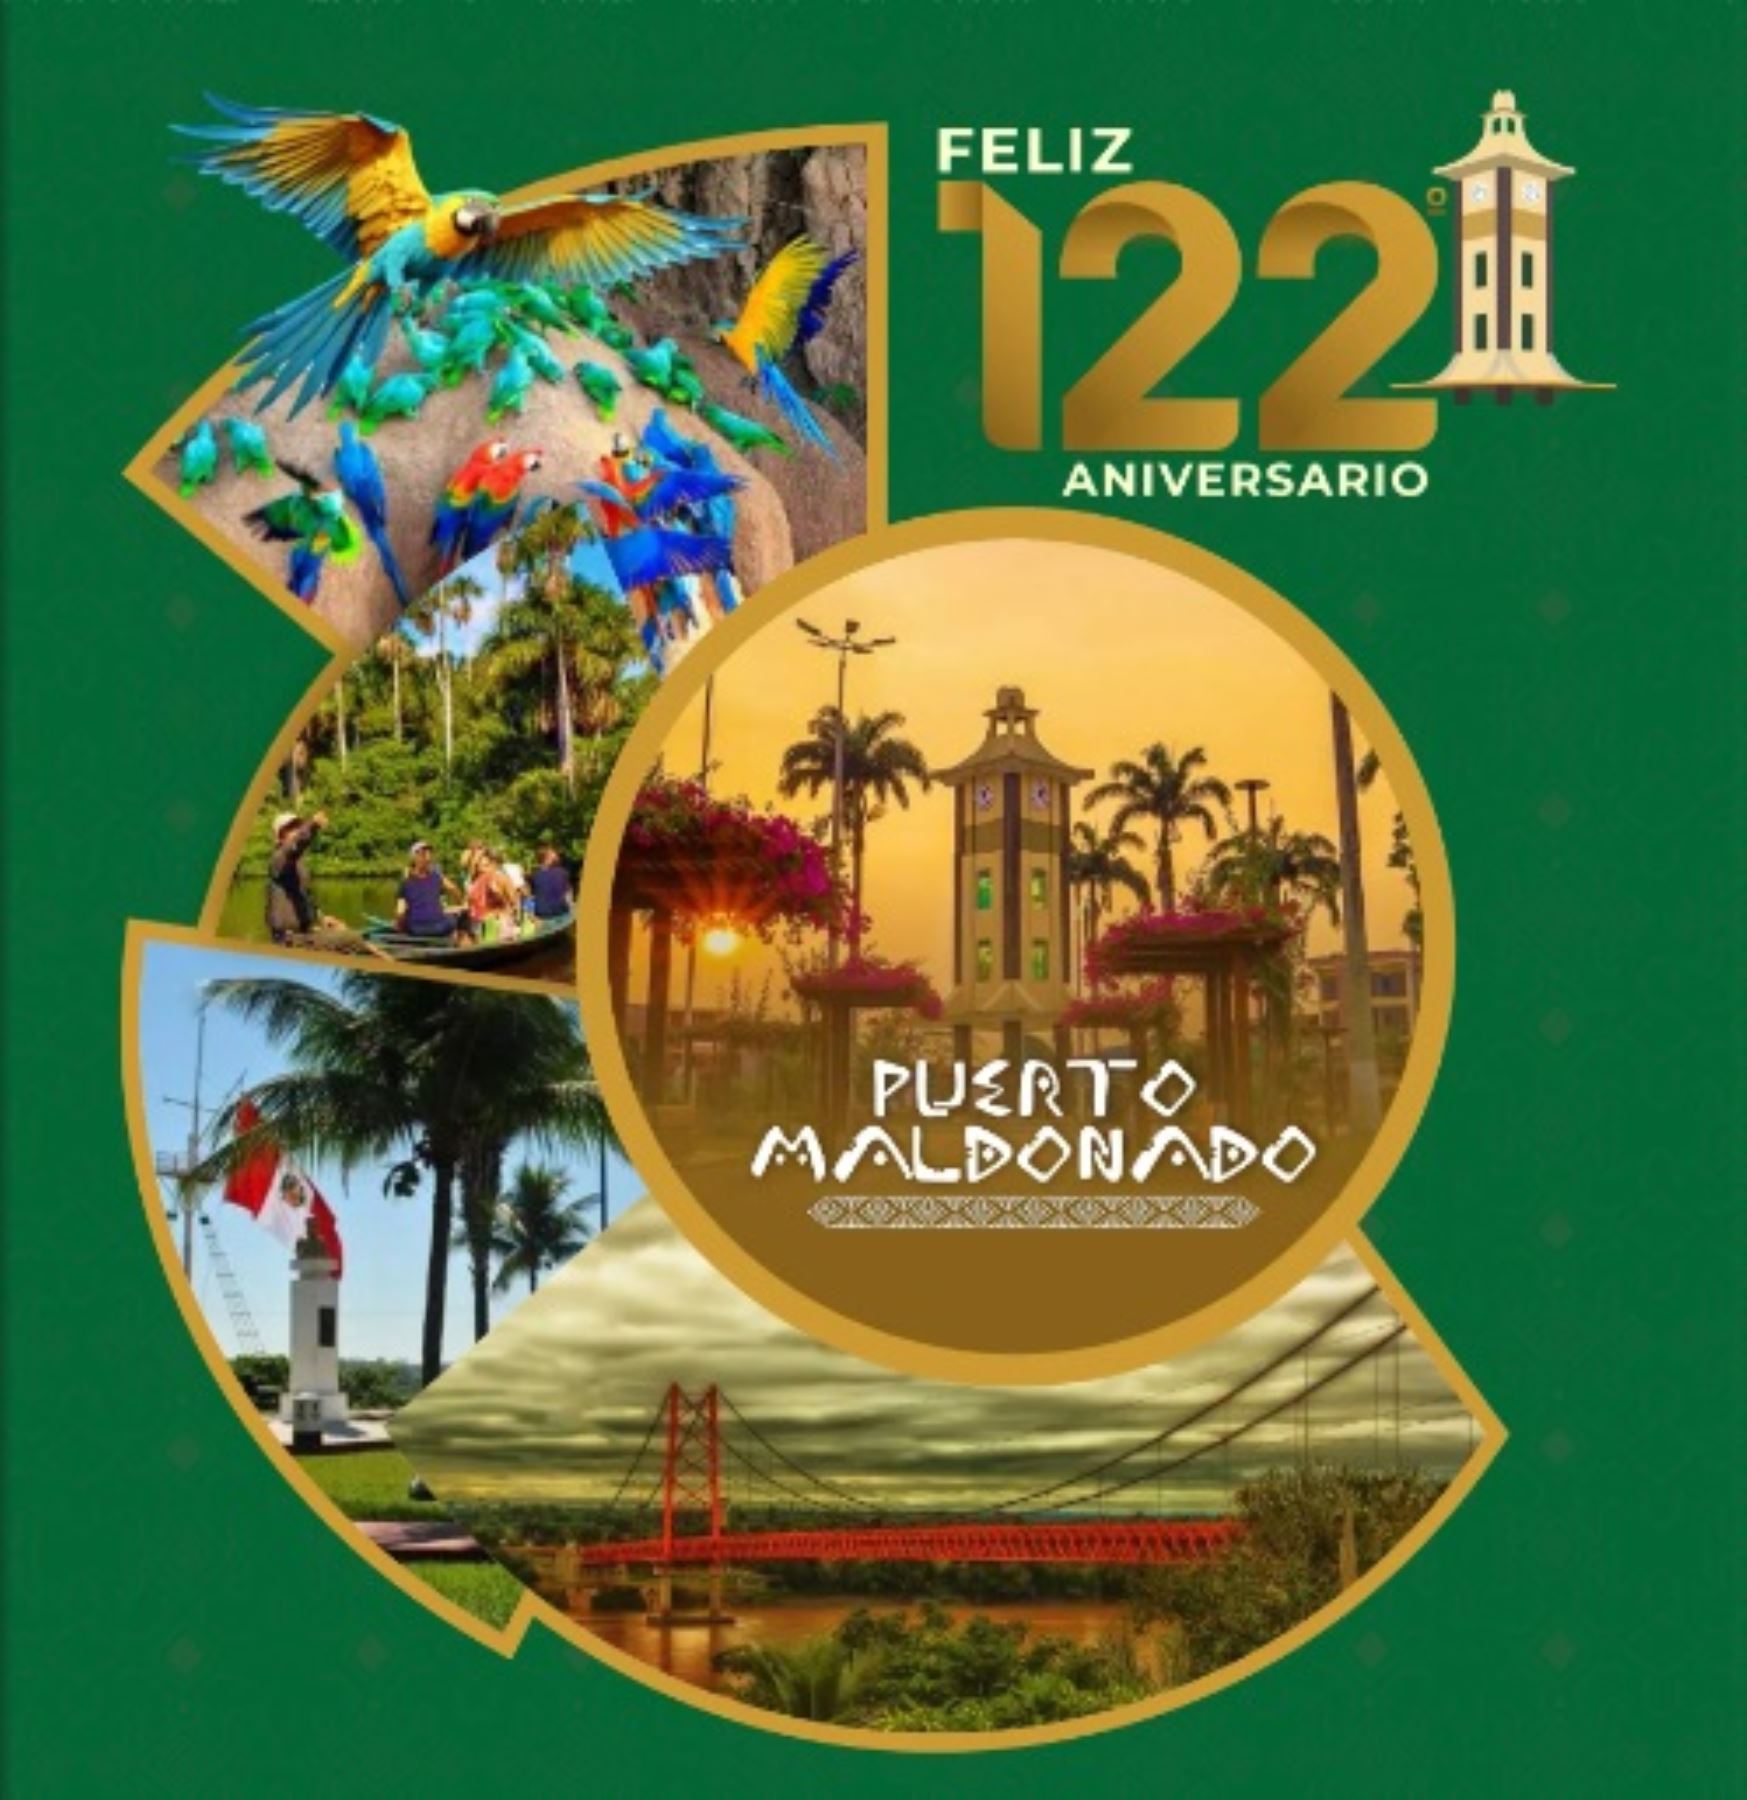 Puerto Maldonado celebra 122 efemérides con pasacalle y ferias agropecuarias y artesanales